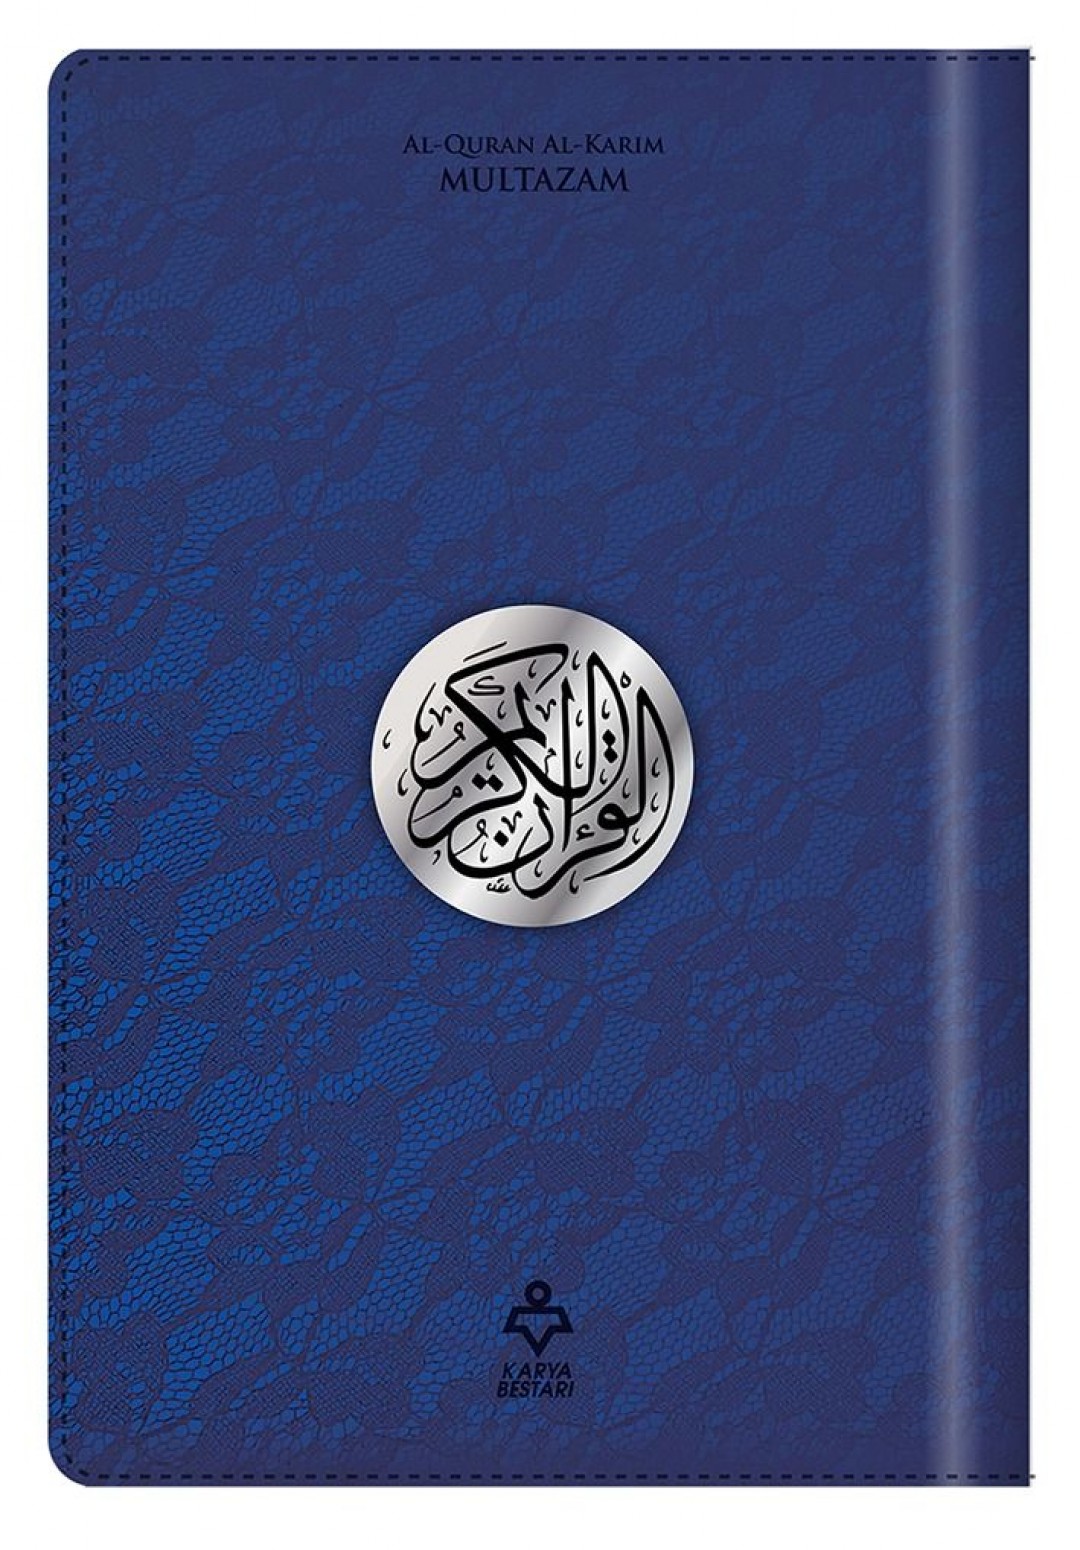 Al-Quran Hantaran Karya Bestari